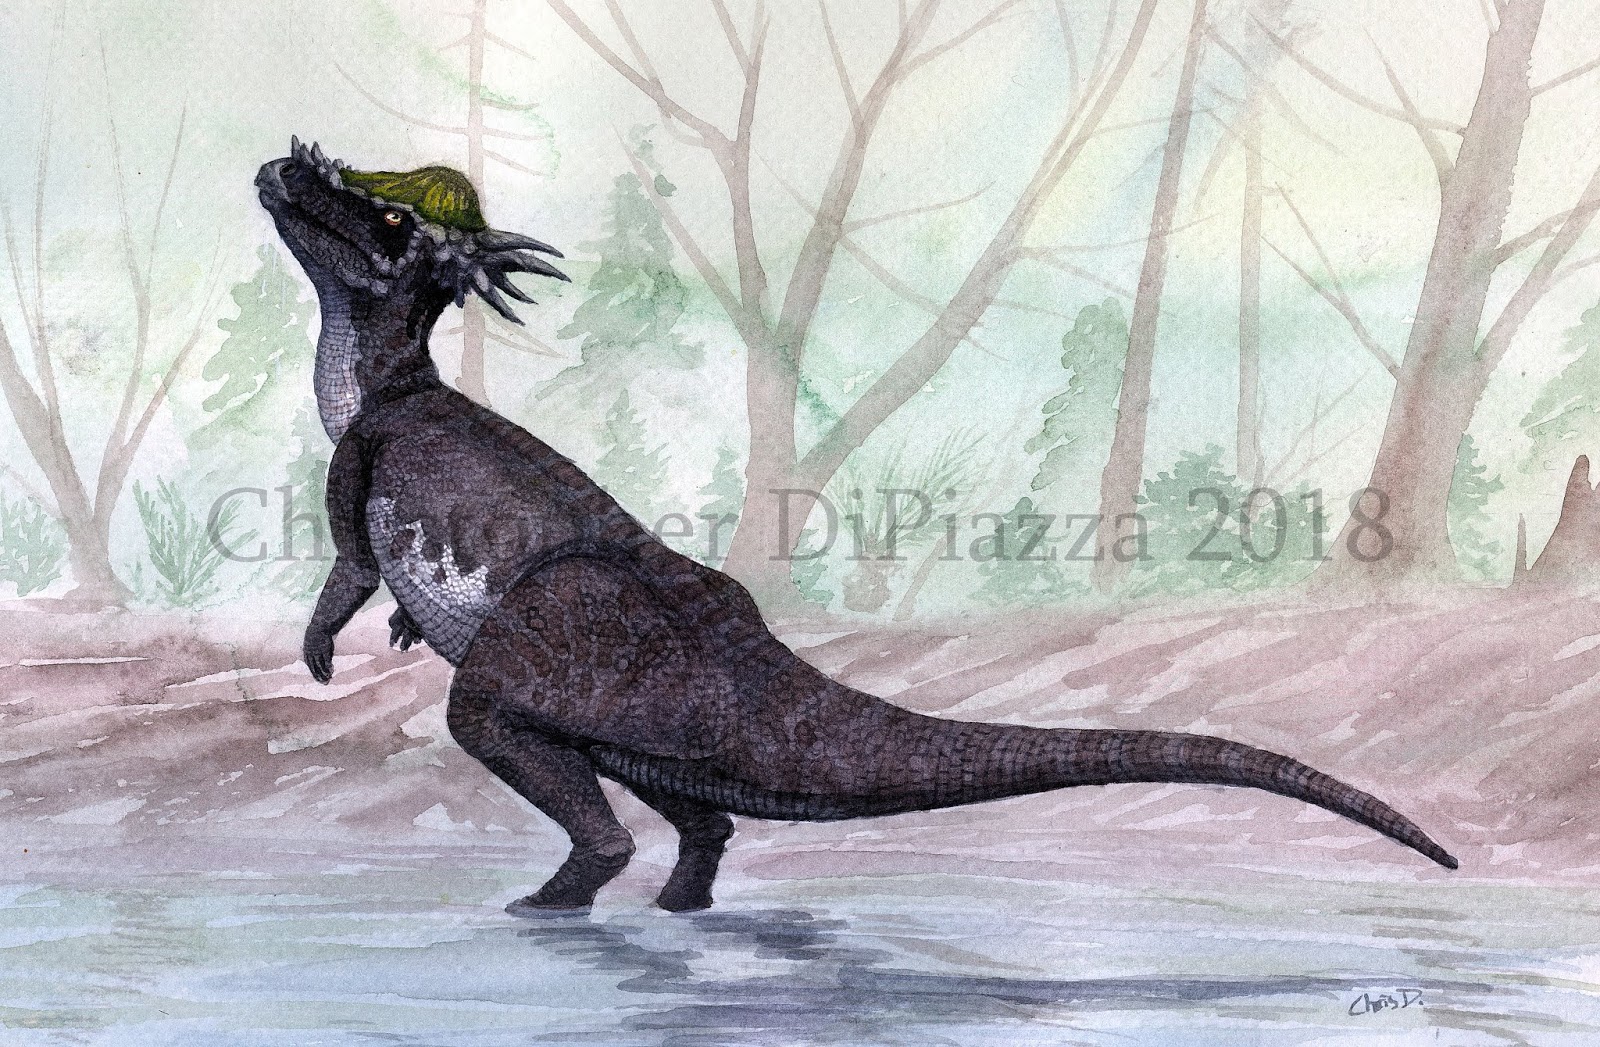 Prehistoric Beast of the Week: Deinocheirus: Beast of the Week